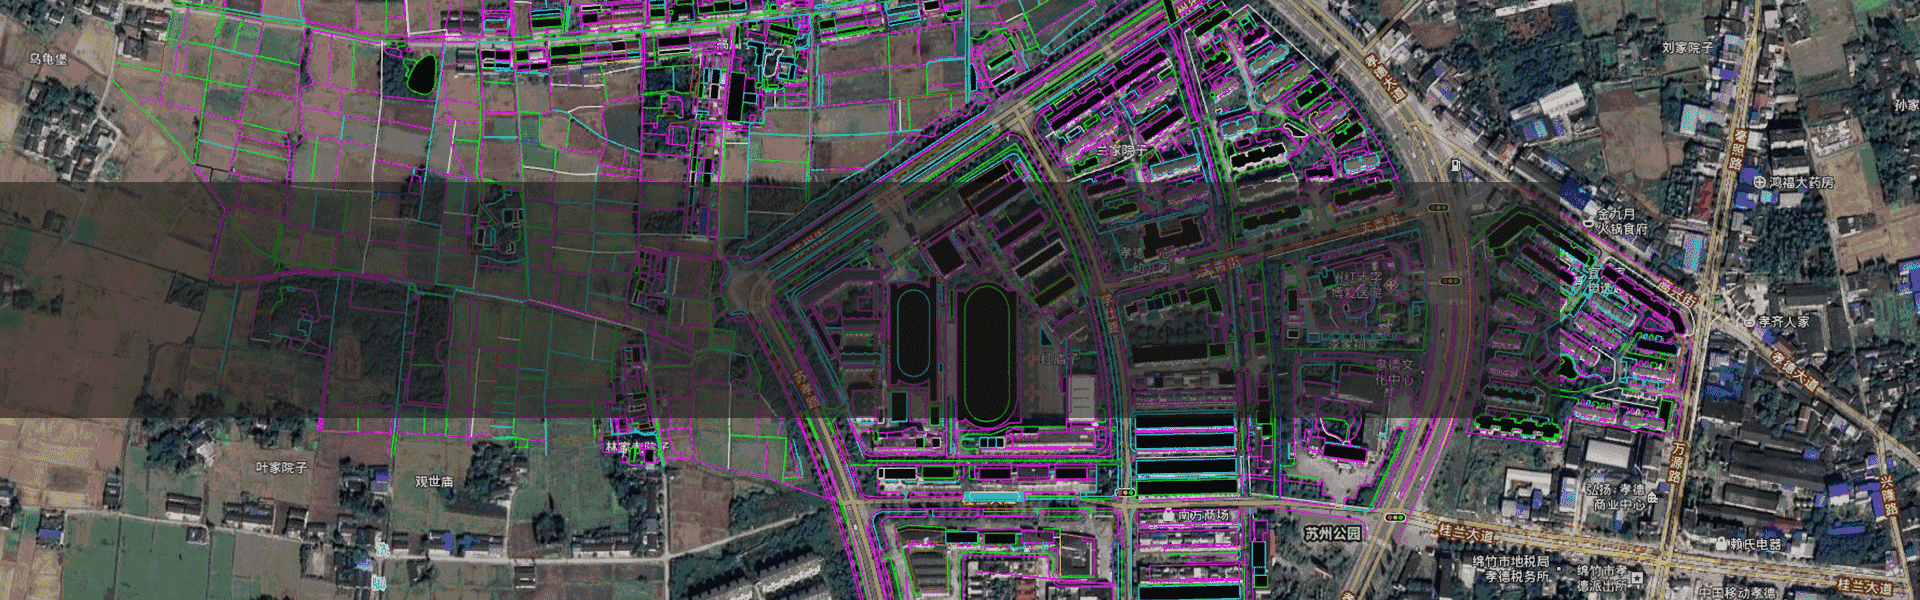 新版谷歌地图高清卫星地图下载拼接,地图标注,DEM高程下载,等高线提取,矢量数据(WGS84,西安80,北京54,2000坐标)叠加配准,投影转换;支持AutoCAD,ArcGIS等行业软件。